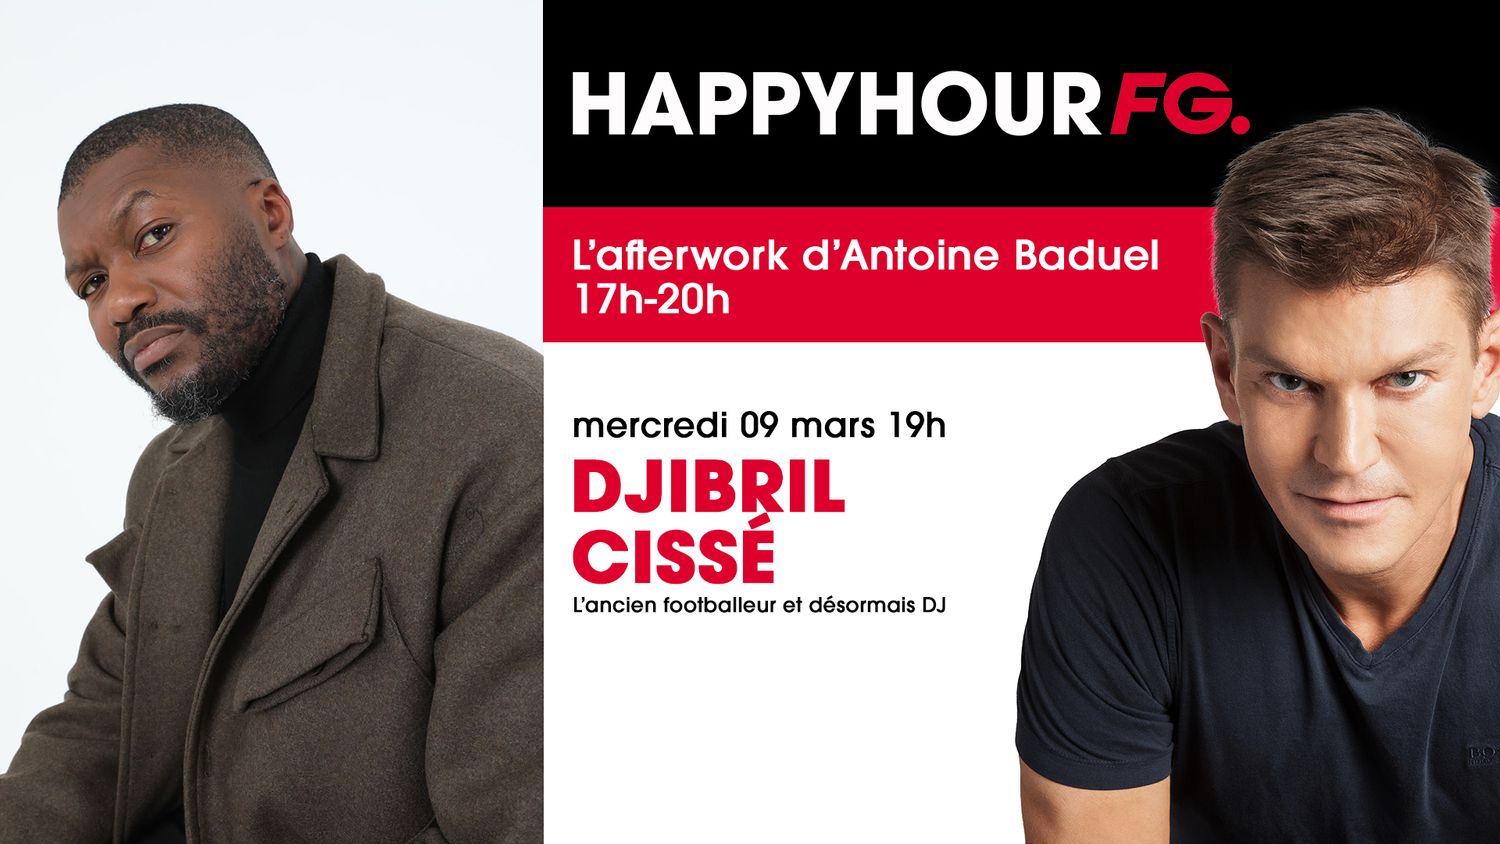 Djibril Cissé invité de l'Happy Hour sur Radio FG